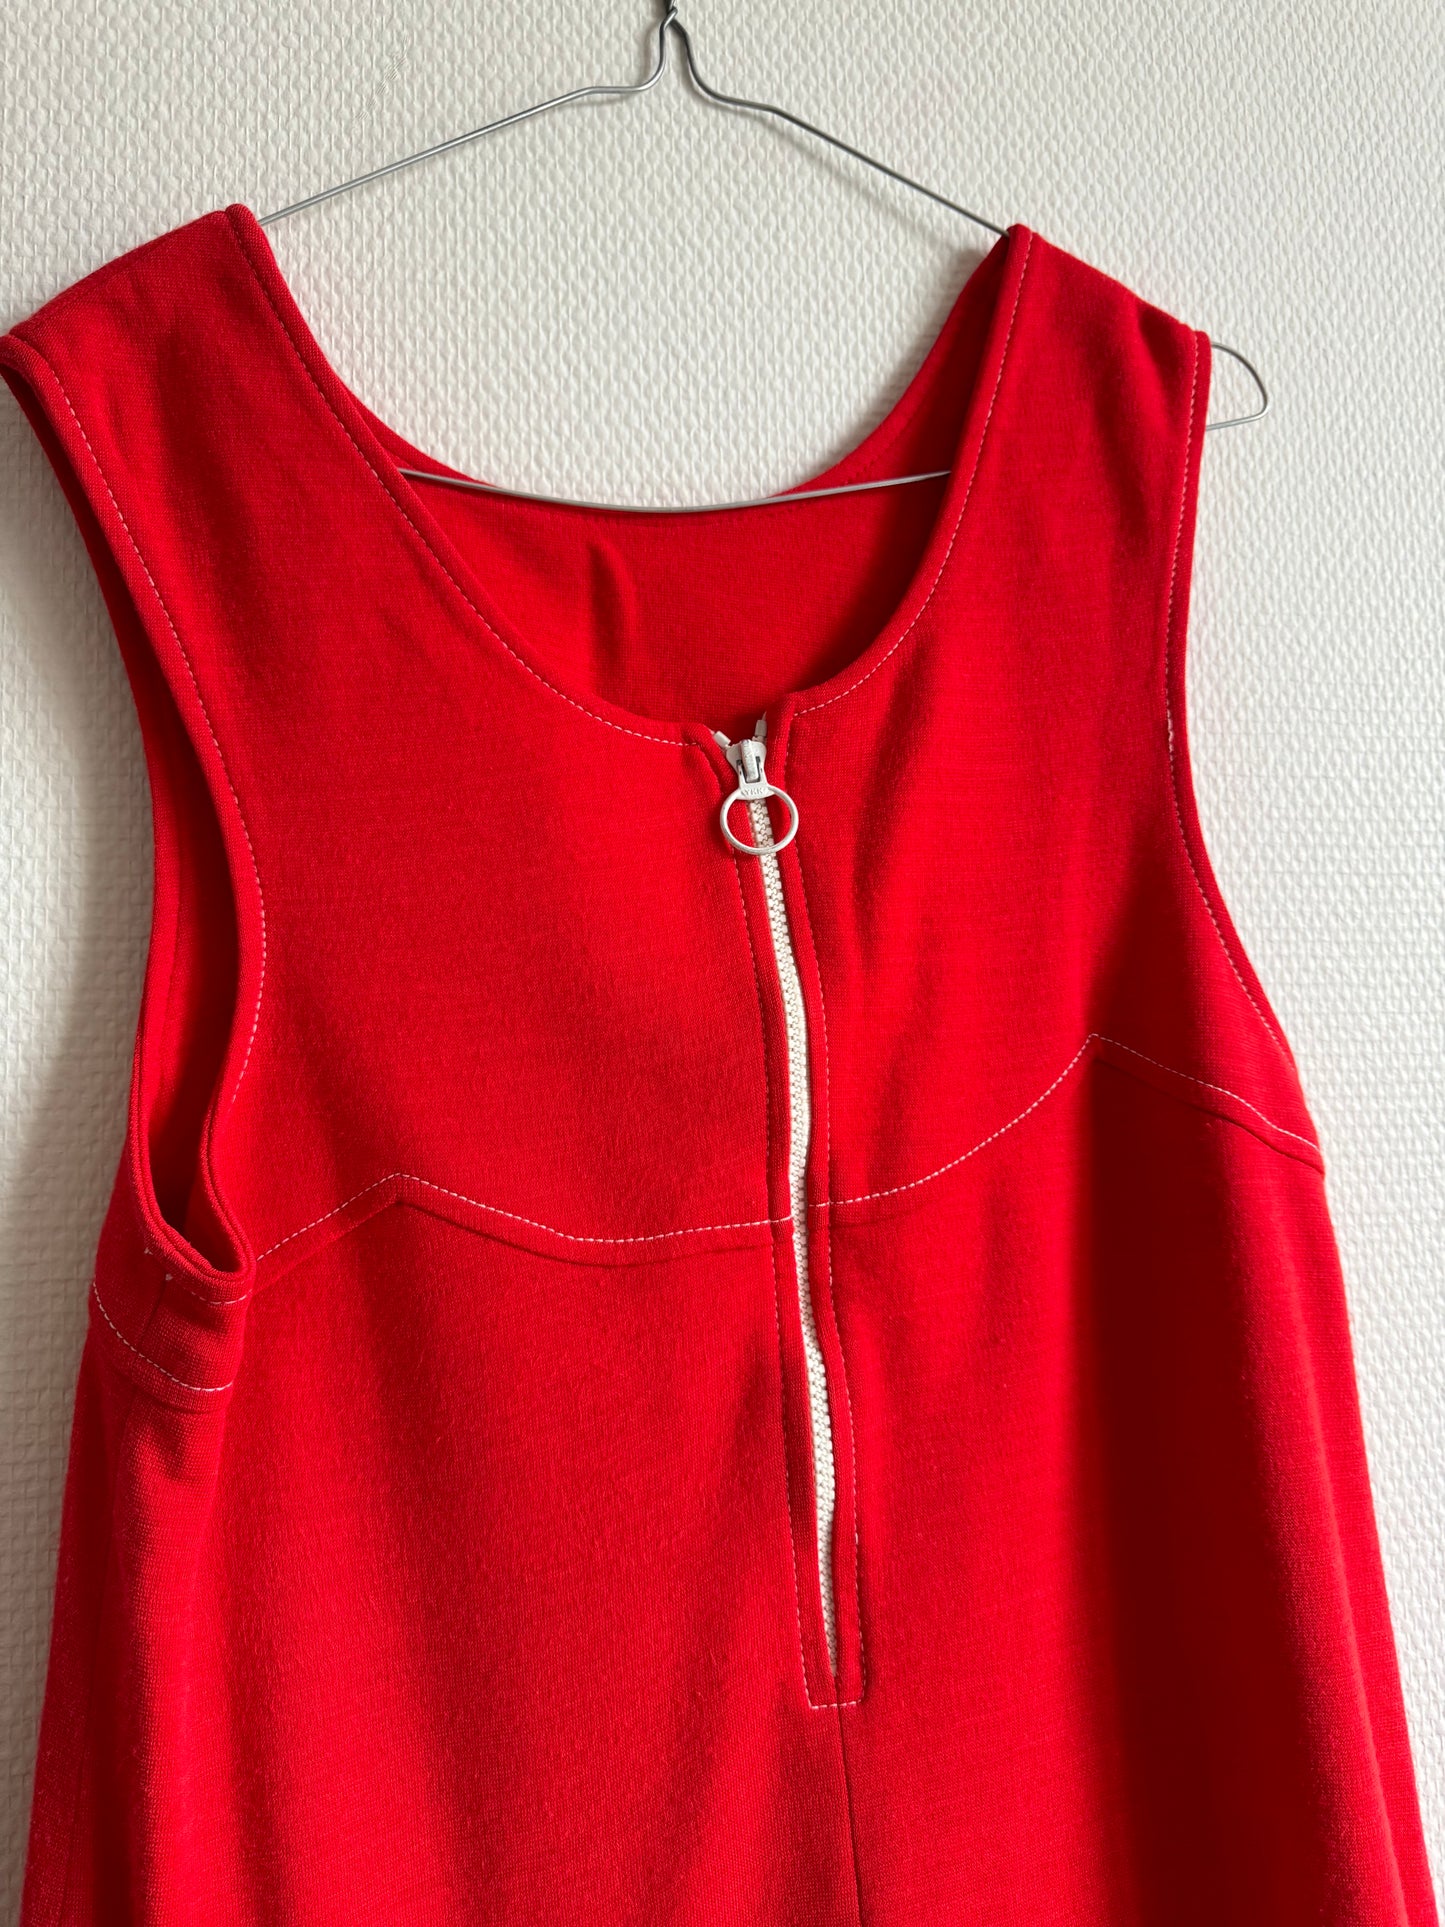 Robe rouge 60s